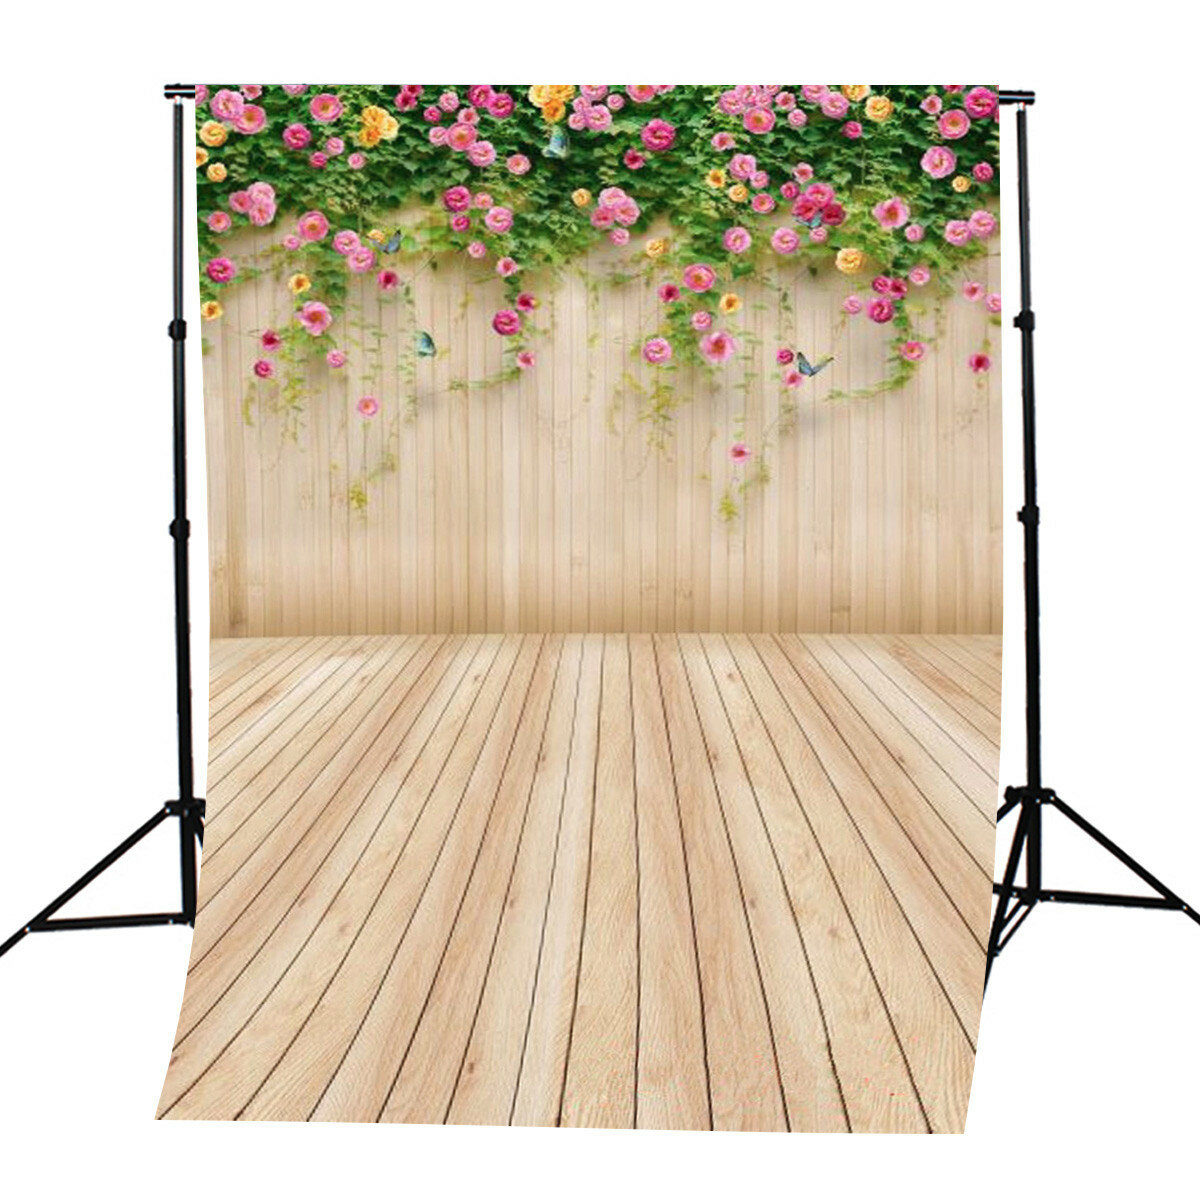 5x7ft vinyl bloem houten vloer fotografie achtergrond achtergrond voor studio foto prop decoratie